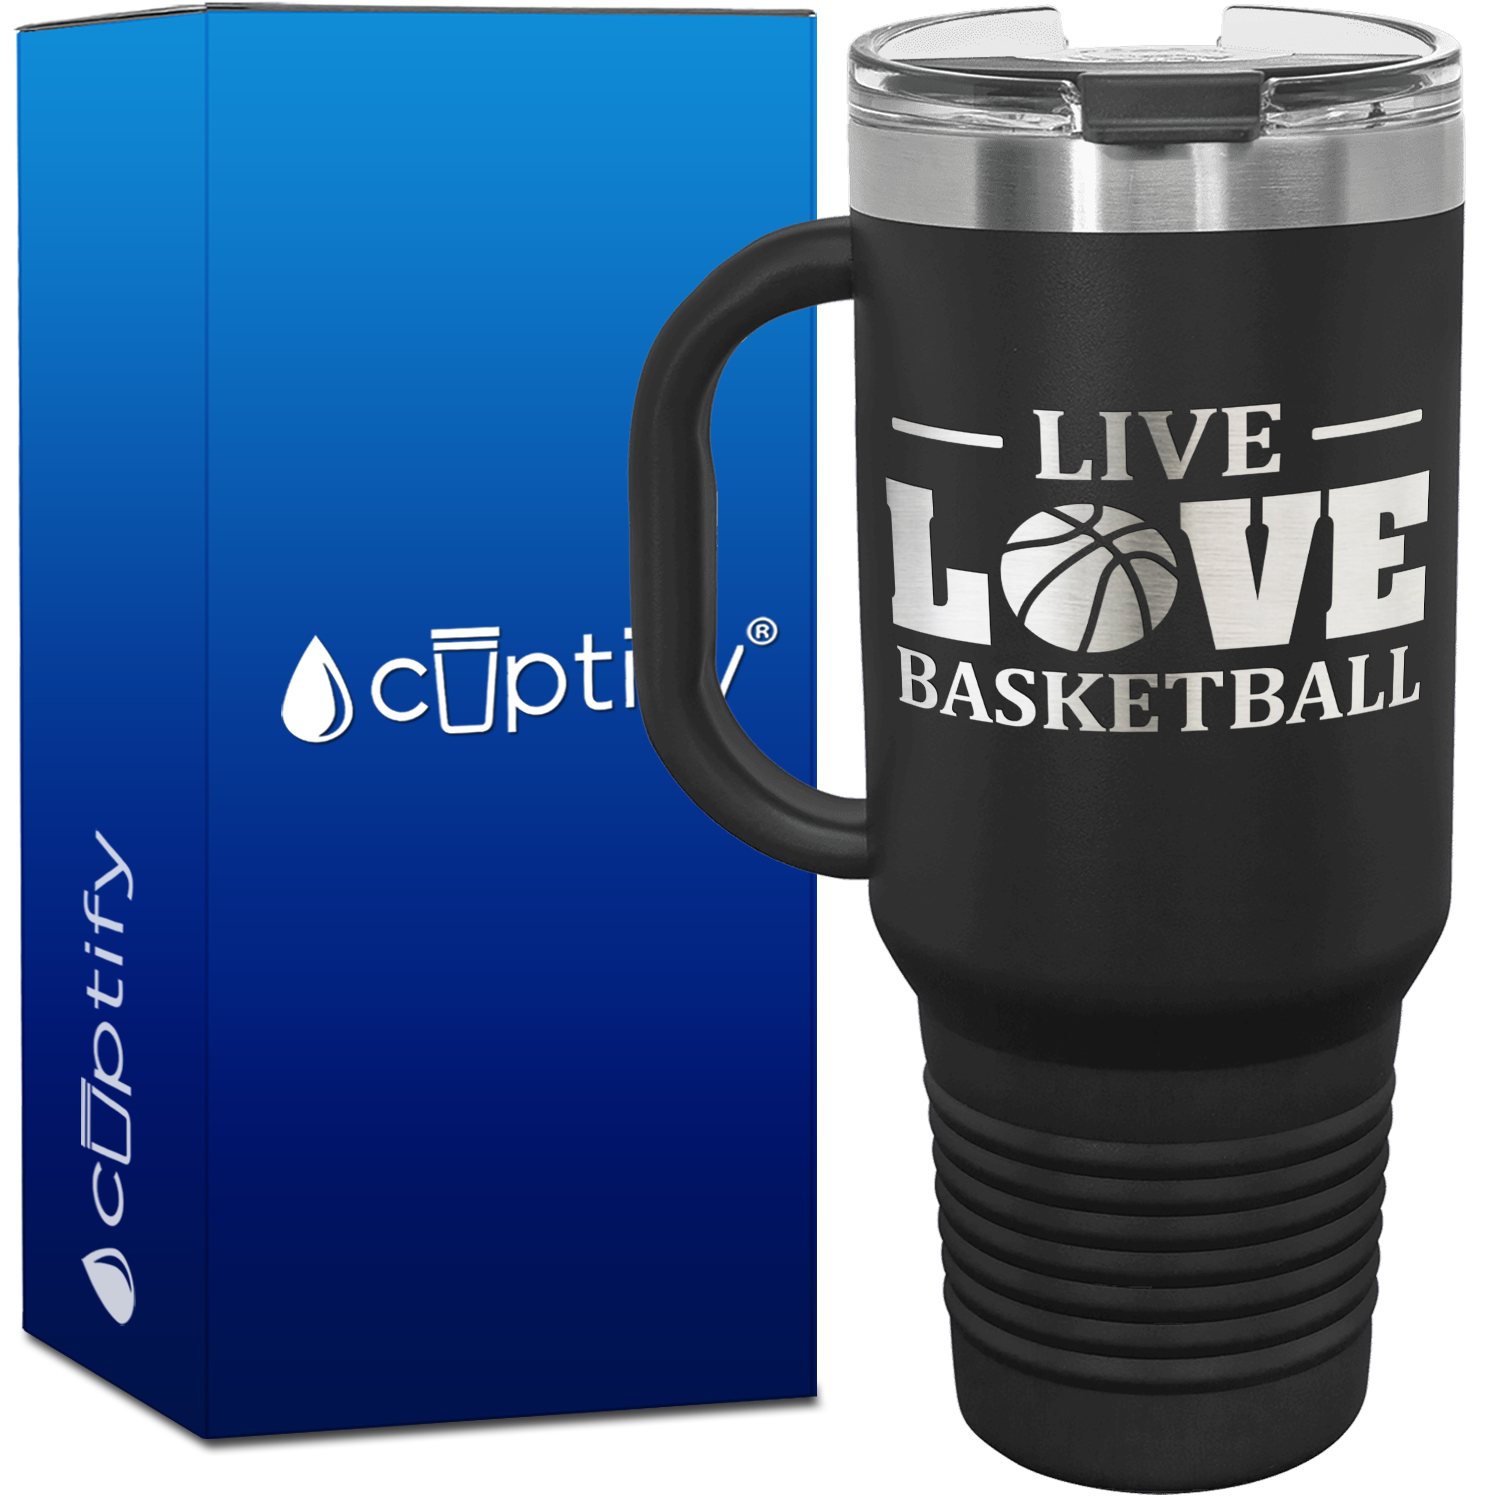 Live Love Basketball Ball 40oz Basketball Travel Mug